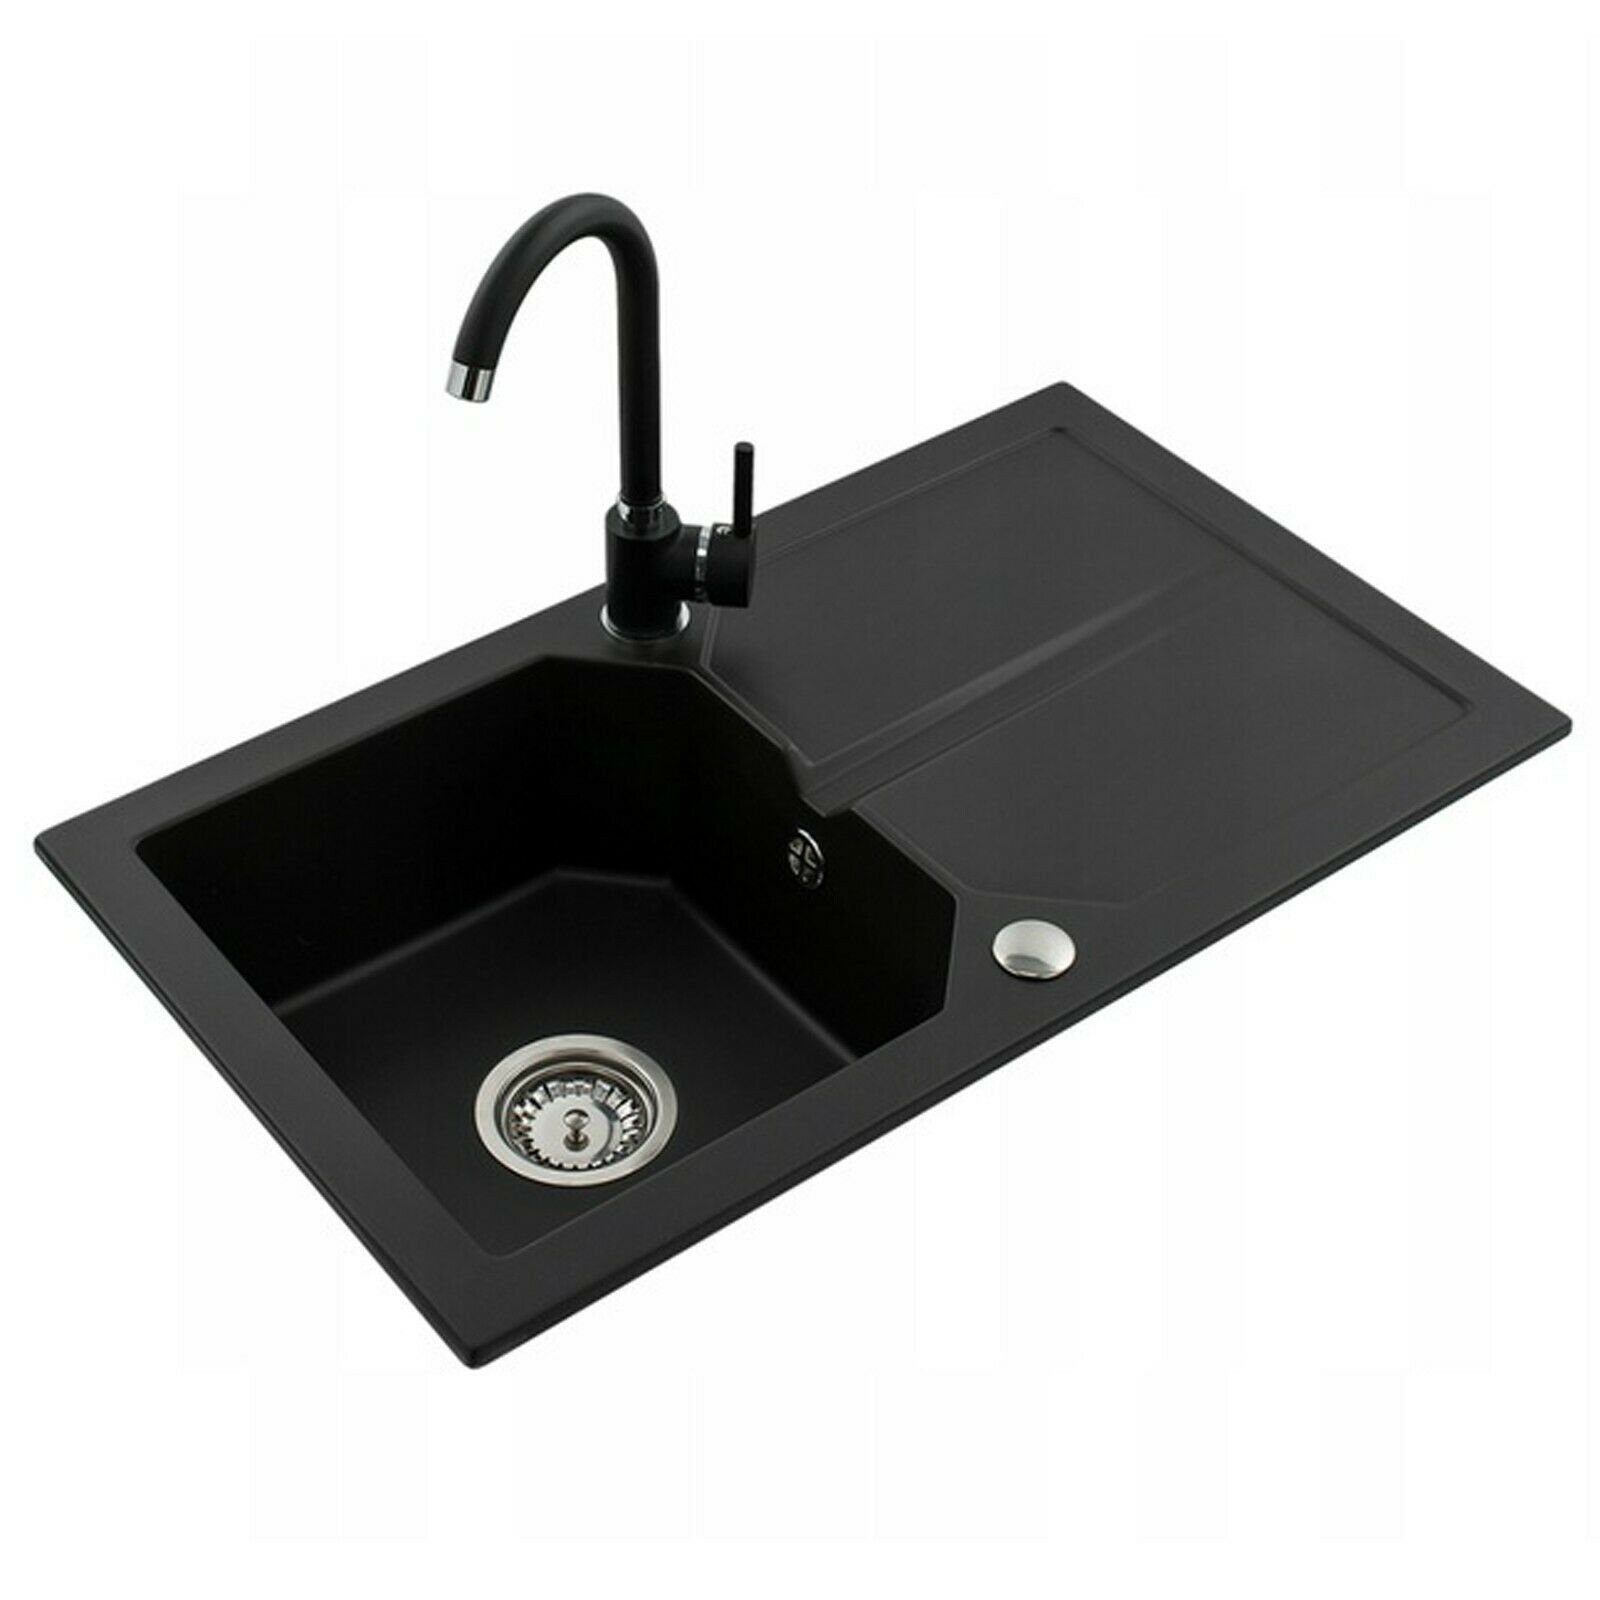 Armatur schwarz + 750x435mm Farbauswahl Küchenspüle Granit pressiode Küchenspüle Einbauspüle